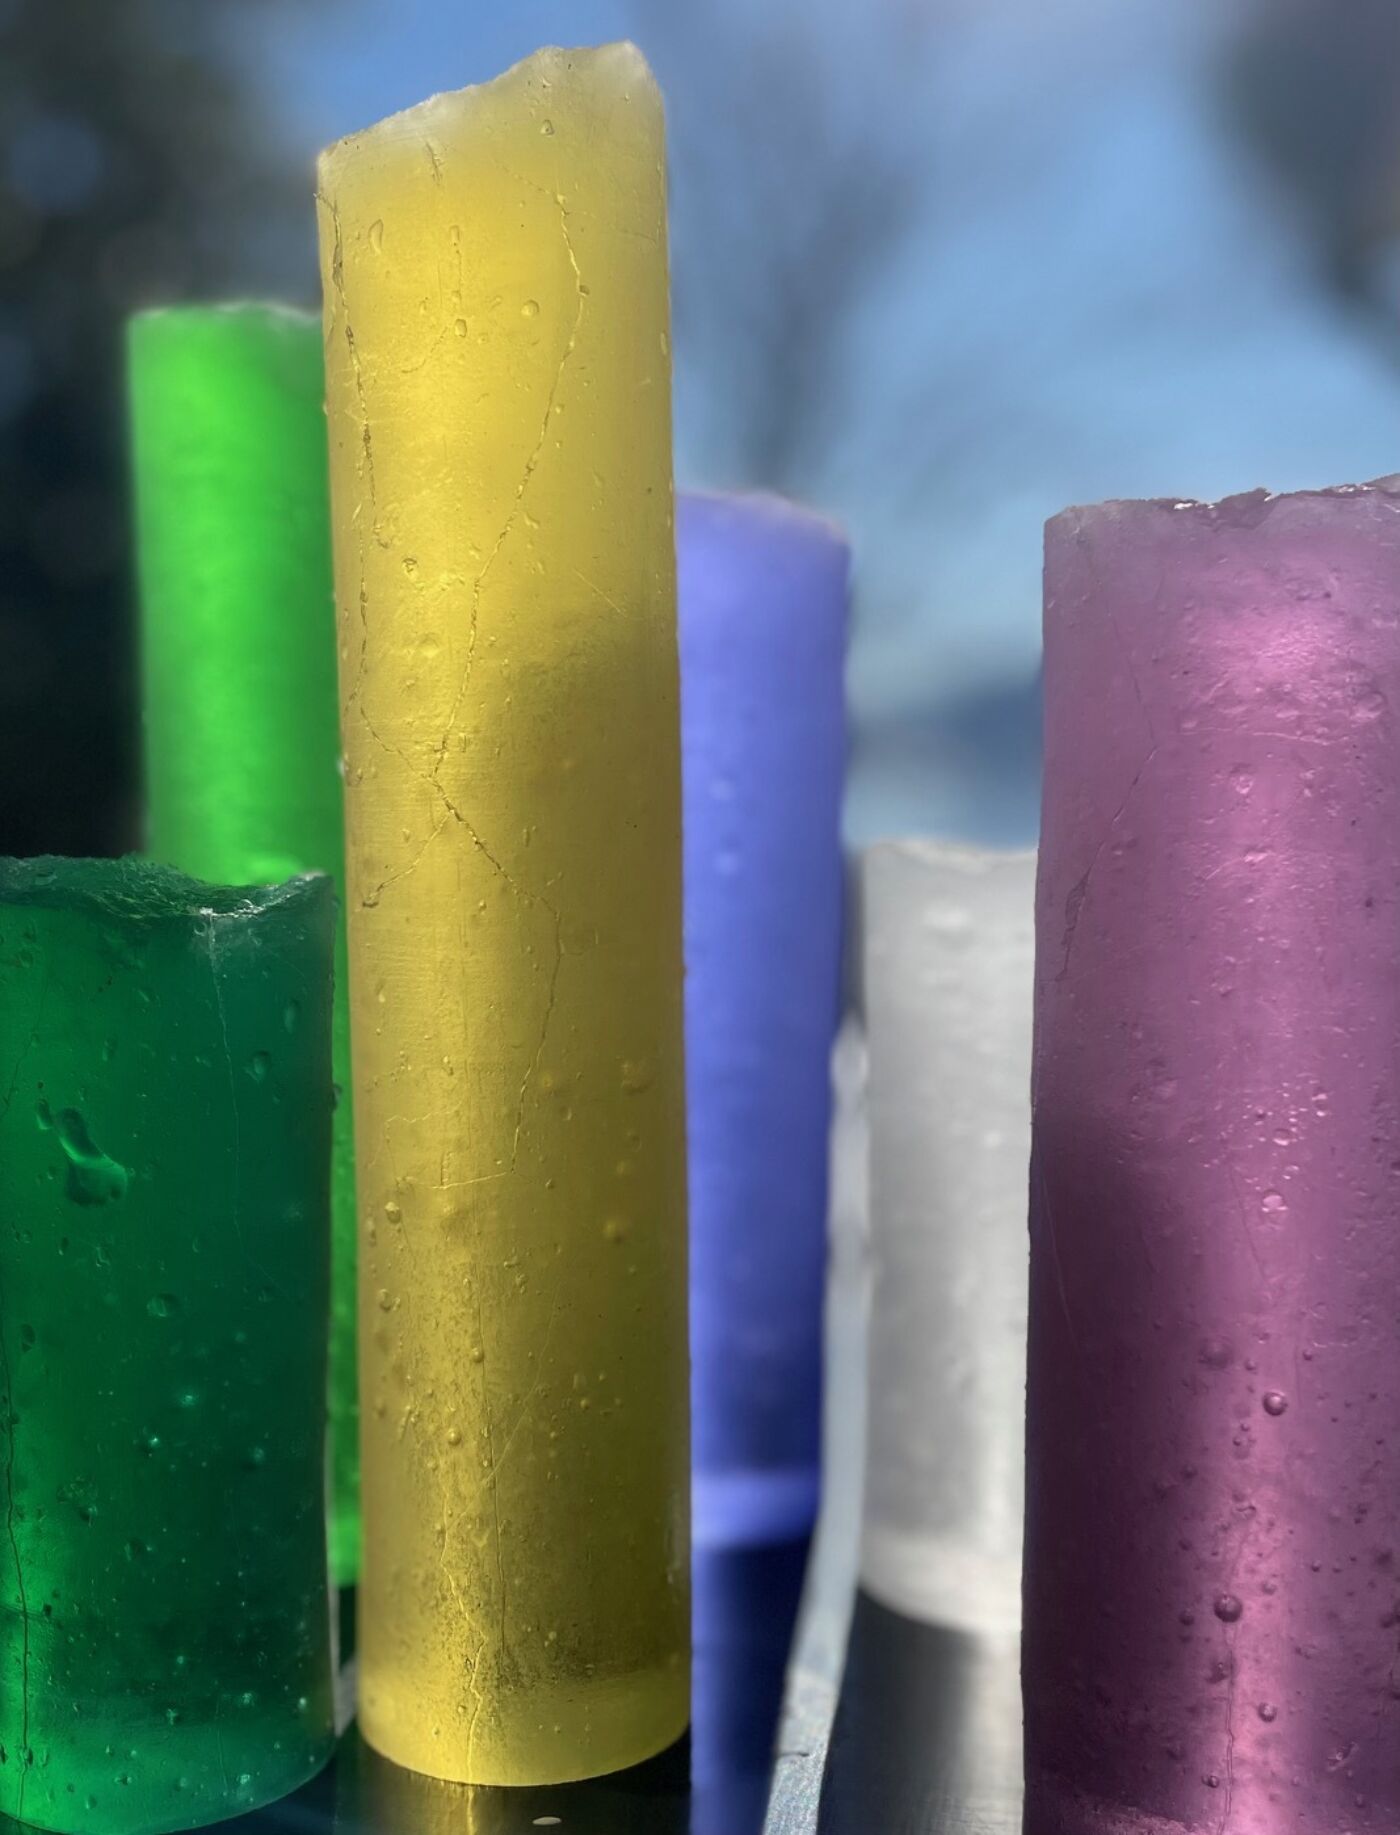 Sylinderformet glass i ulike farger. Foto.